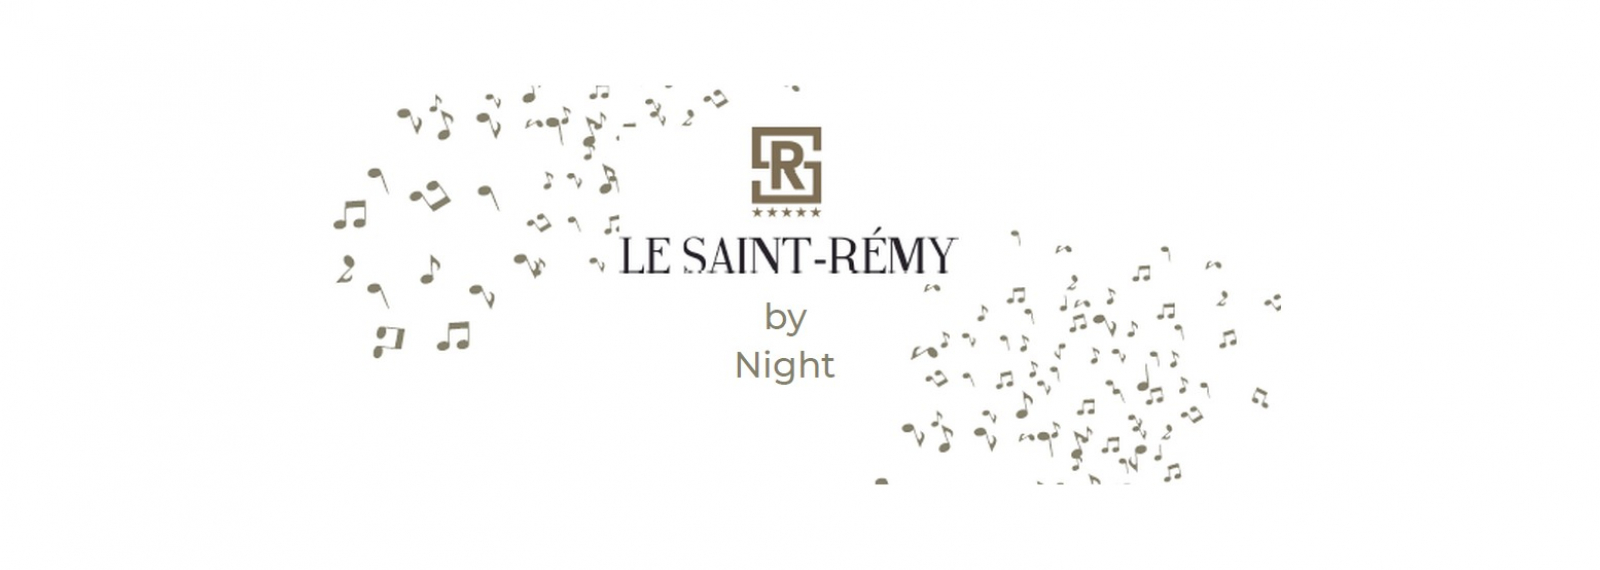 Le Saint-Rémy by Night